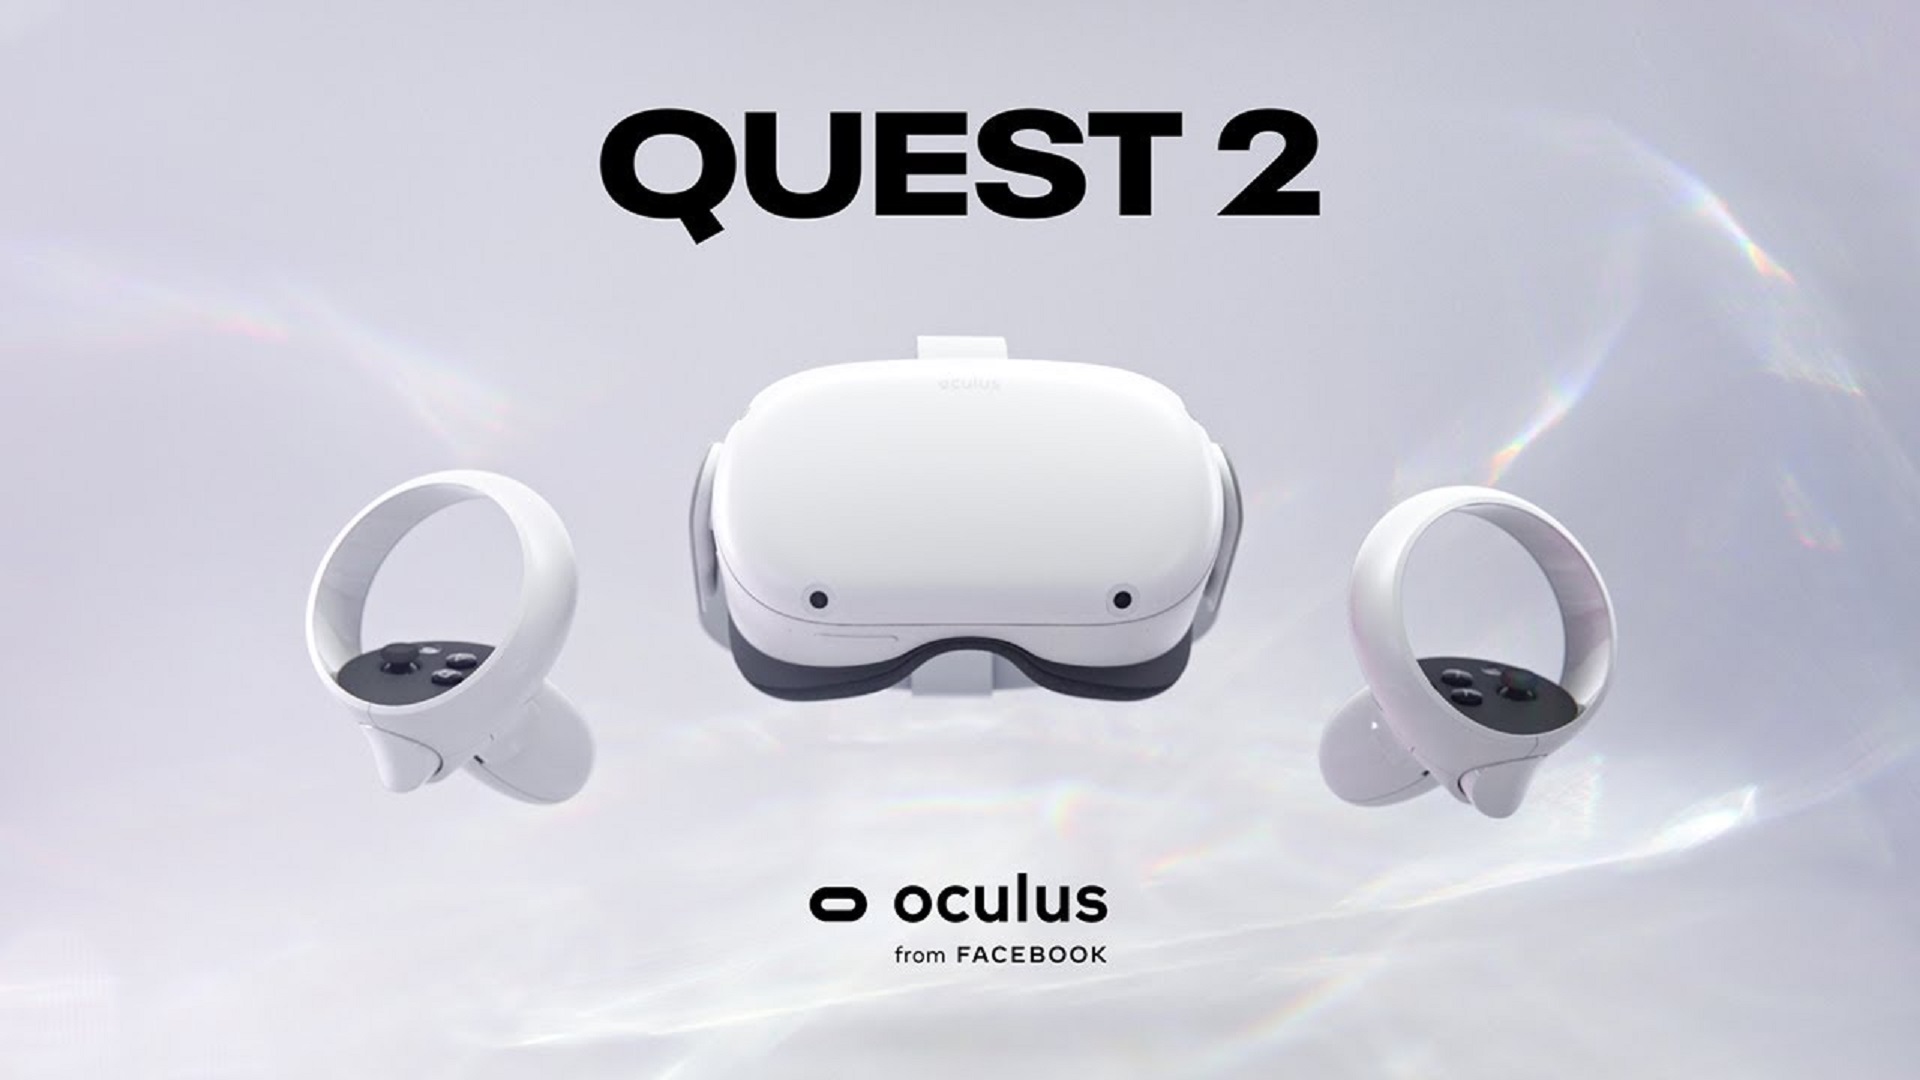 Ceist Oculus 2